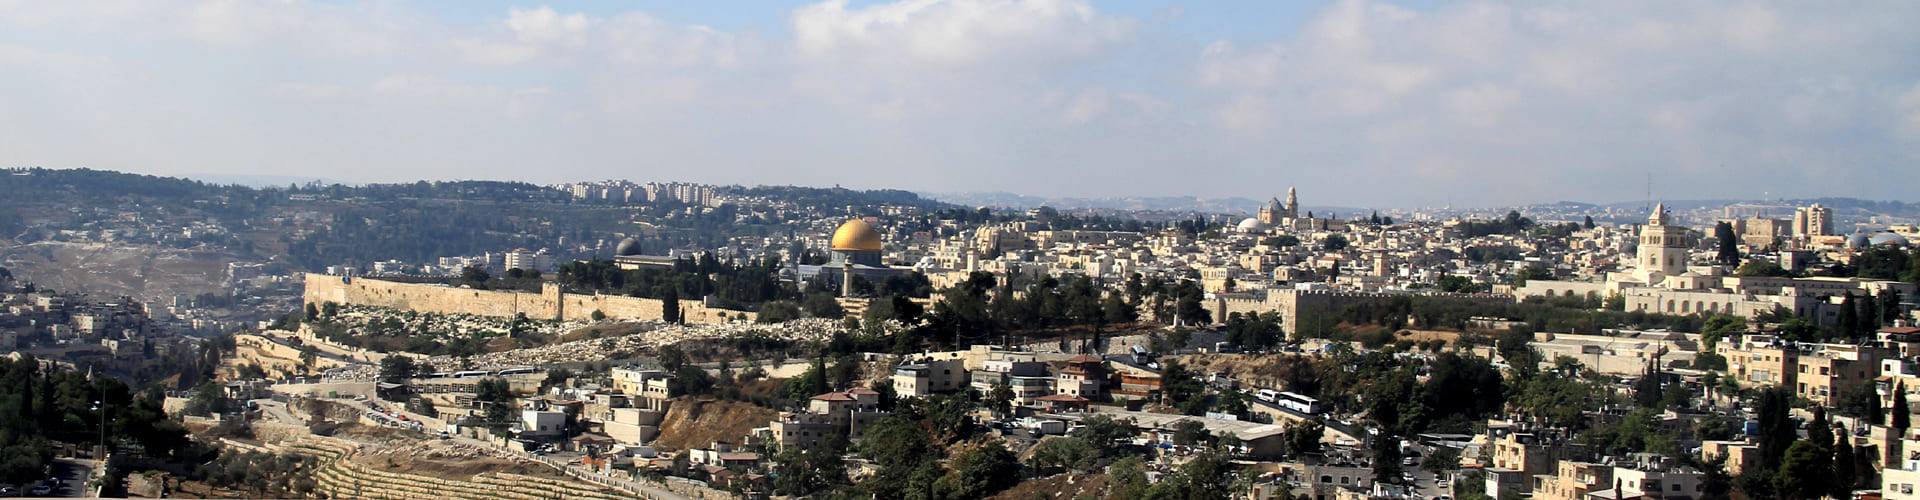 Панорамма Иерусалима